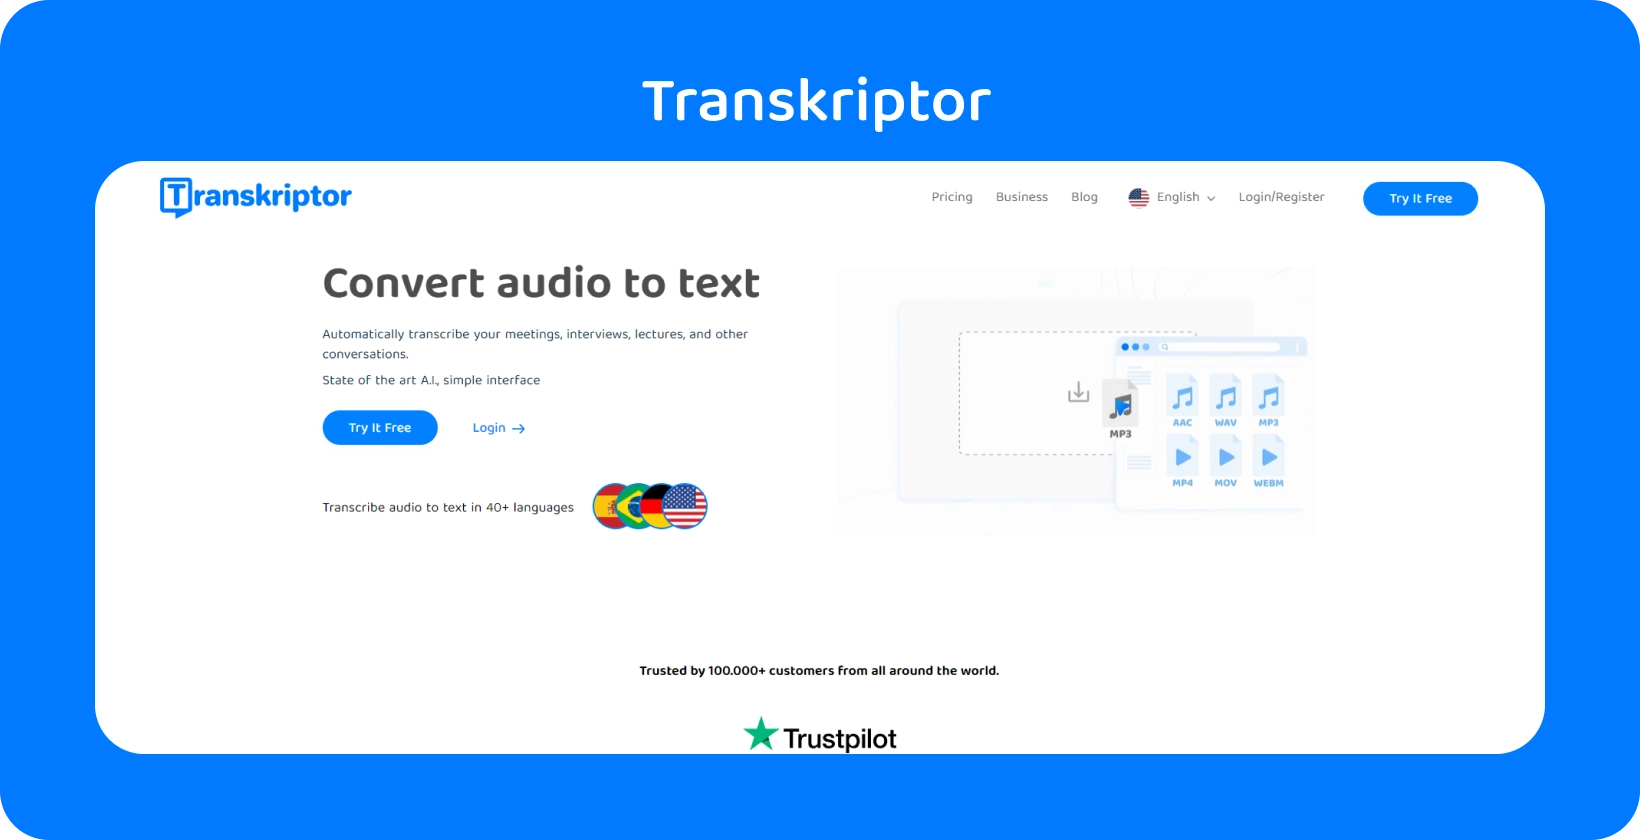 Zrzut ekranu interfejsu oprogramowania do transkrypcji "Transkriptor" pokazujący transkrypcję dialogu.